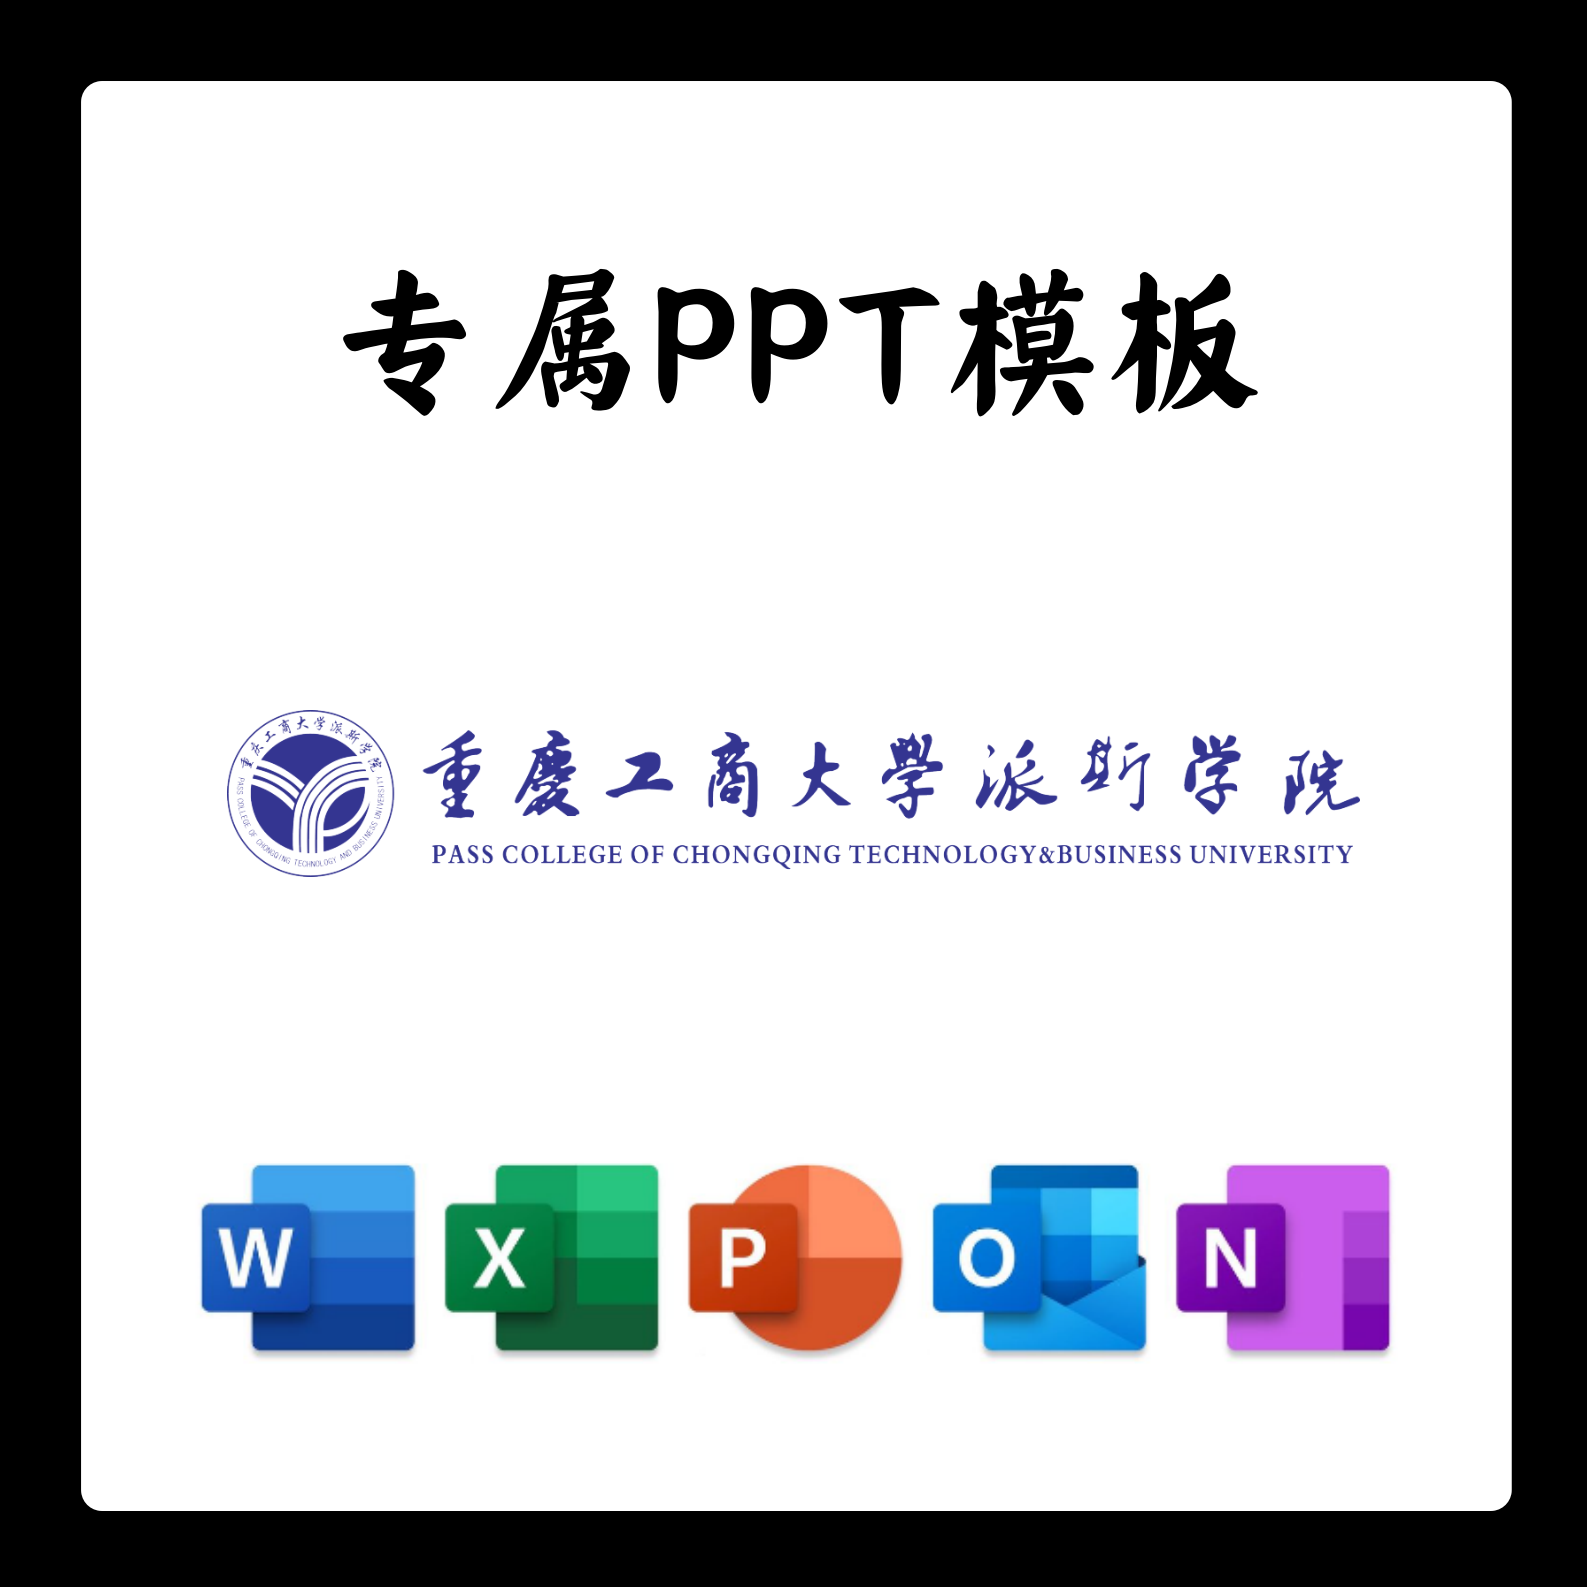 重庆工商大学派斯学院PPT模板简约开题清新欧美毕业开题中期开题